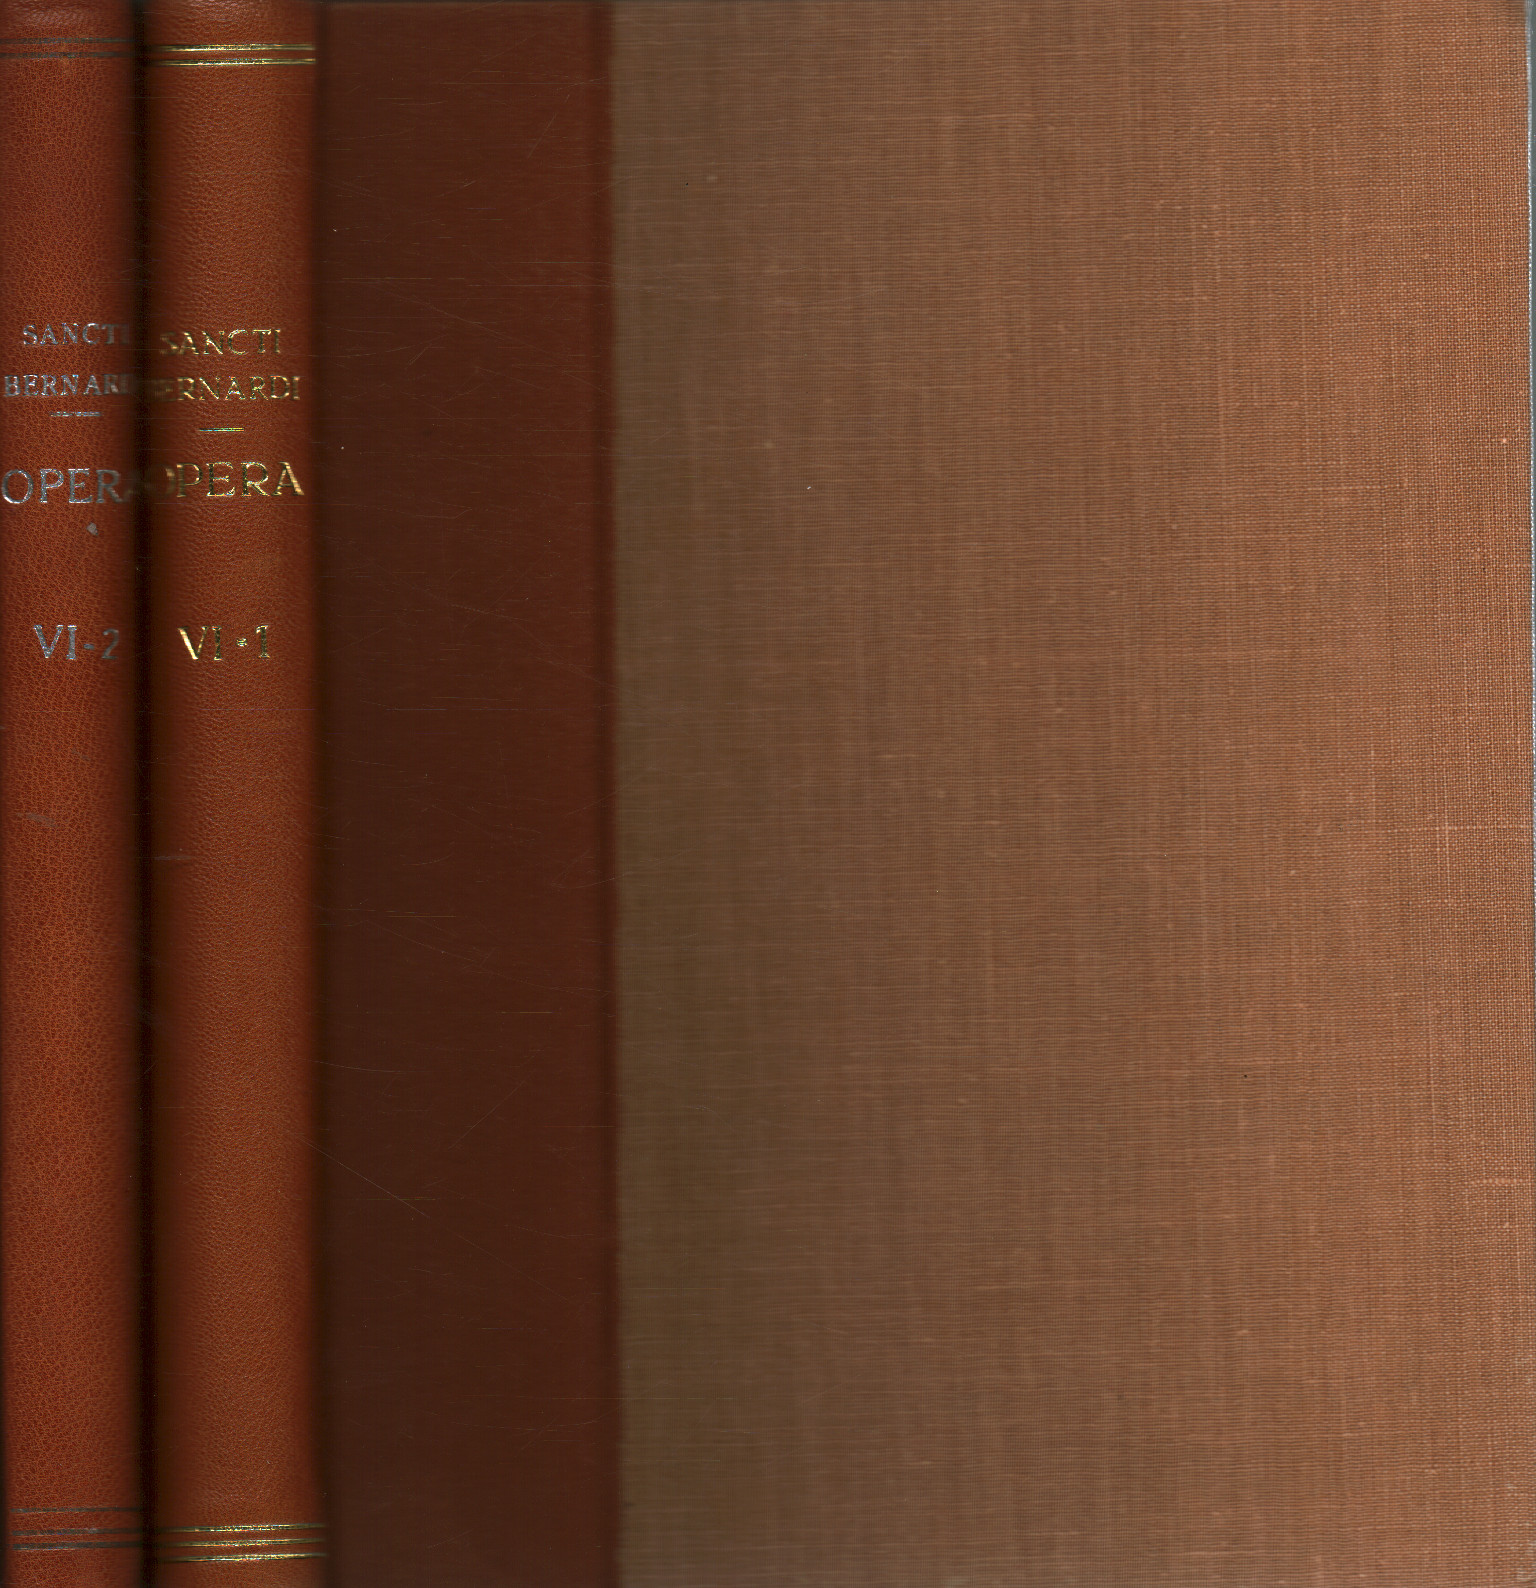 Sermones III (2 volumes), San Bernardo